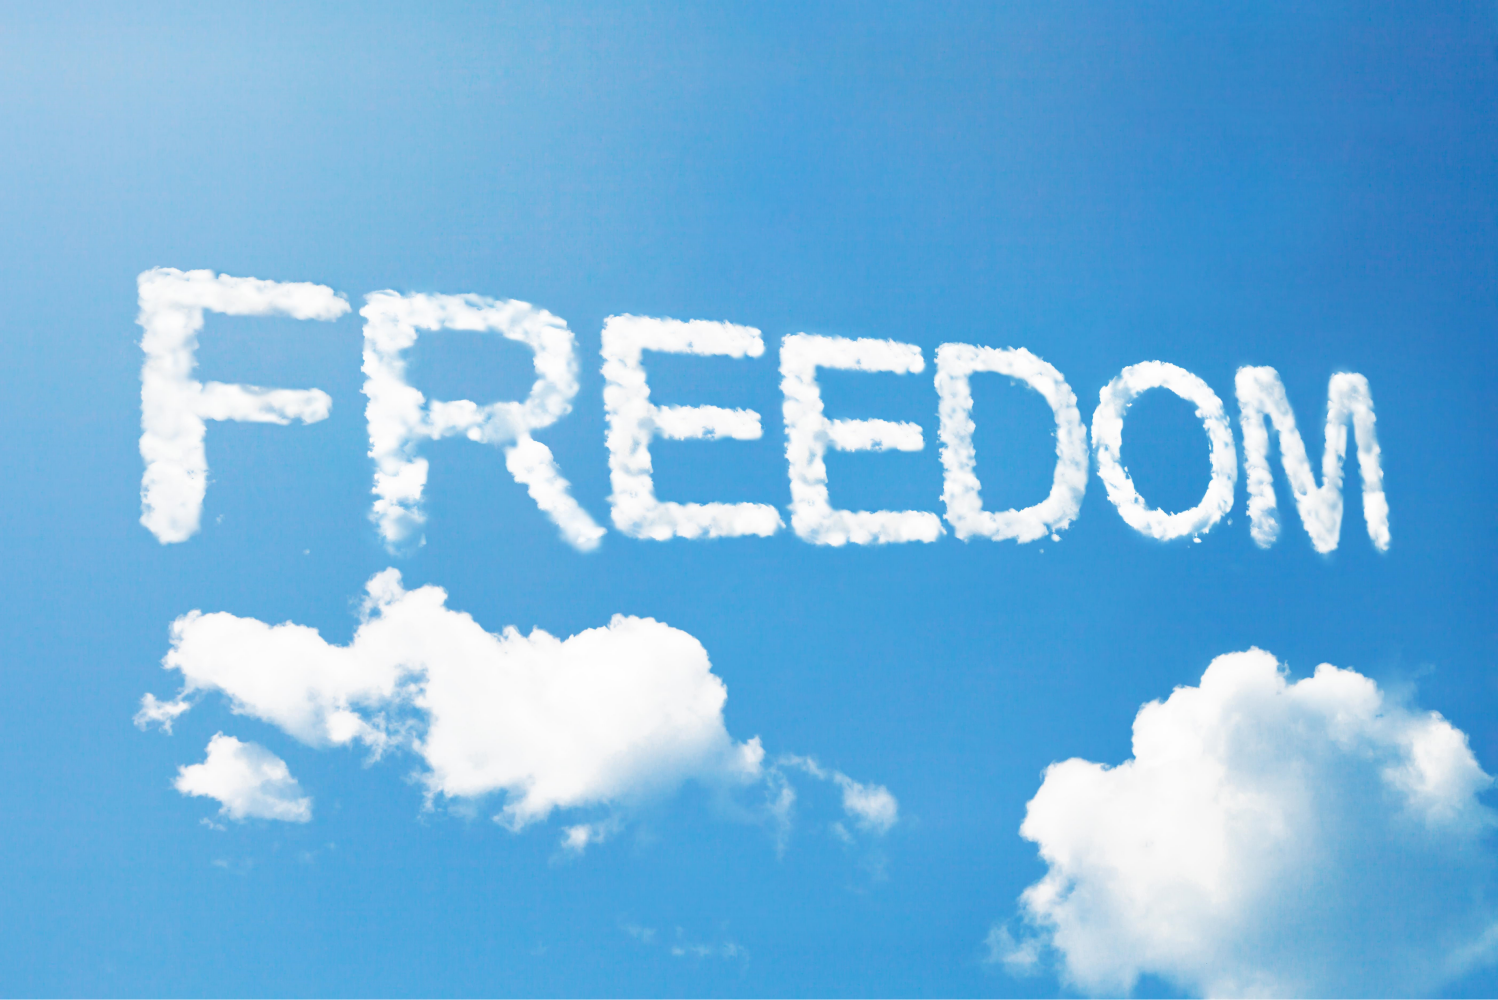 Laparola Libertà Scritta Nelle Nuvole